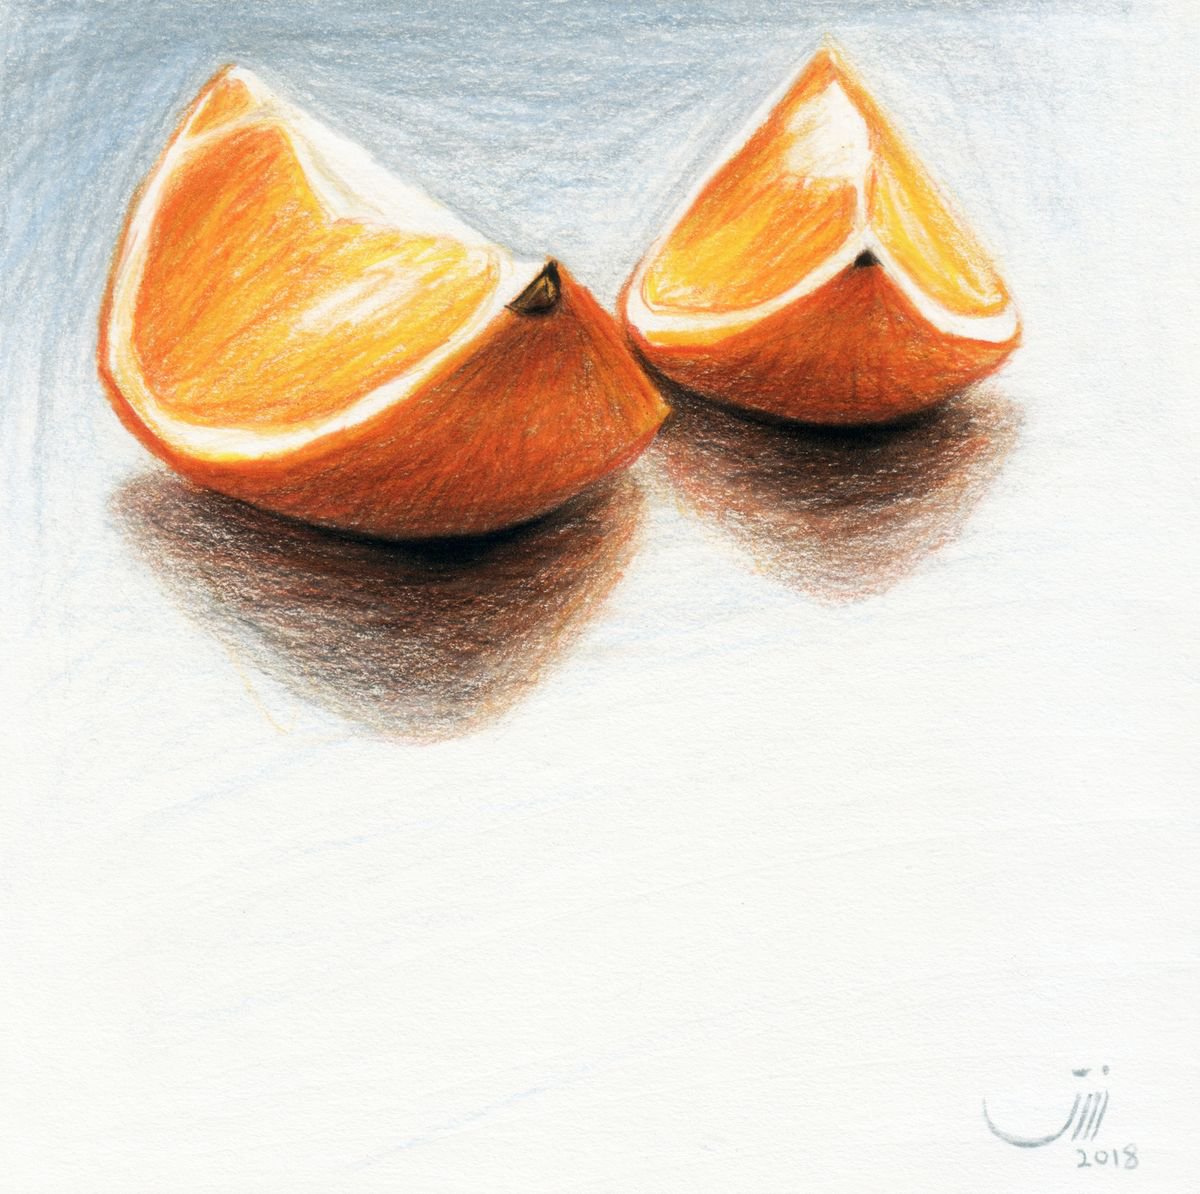 No.126, Oranges by sedigheh zoghi